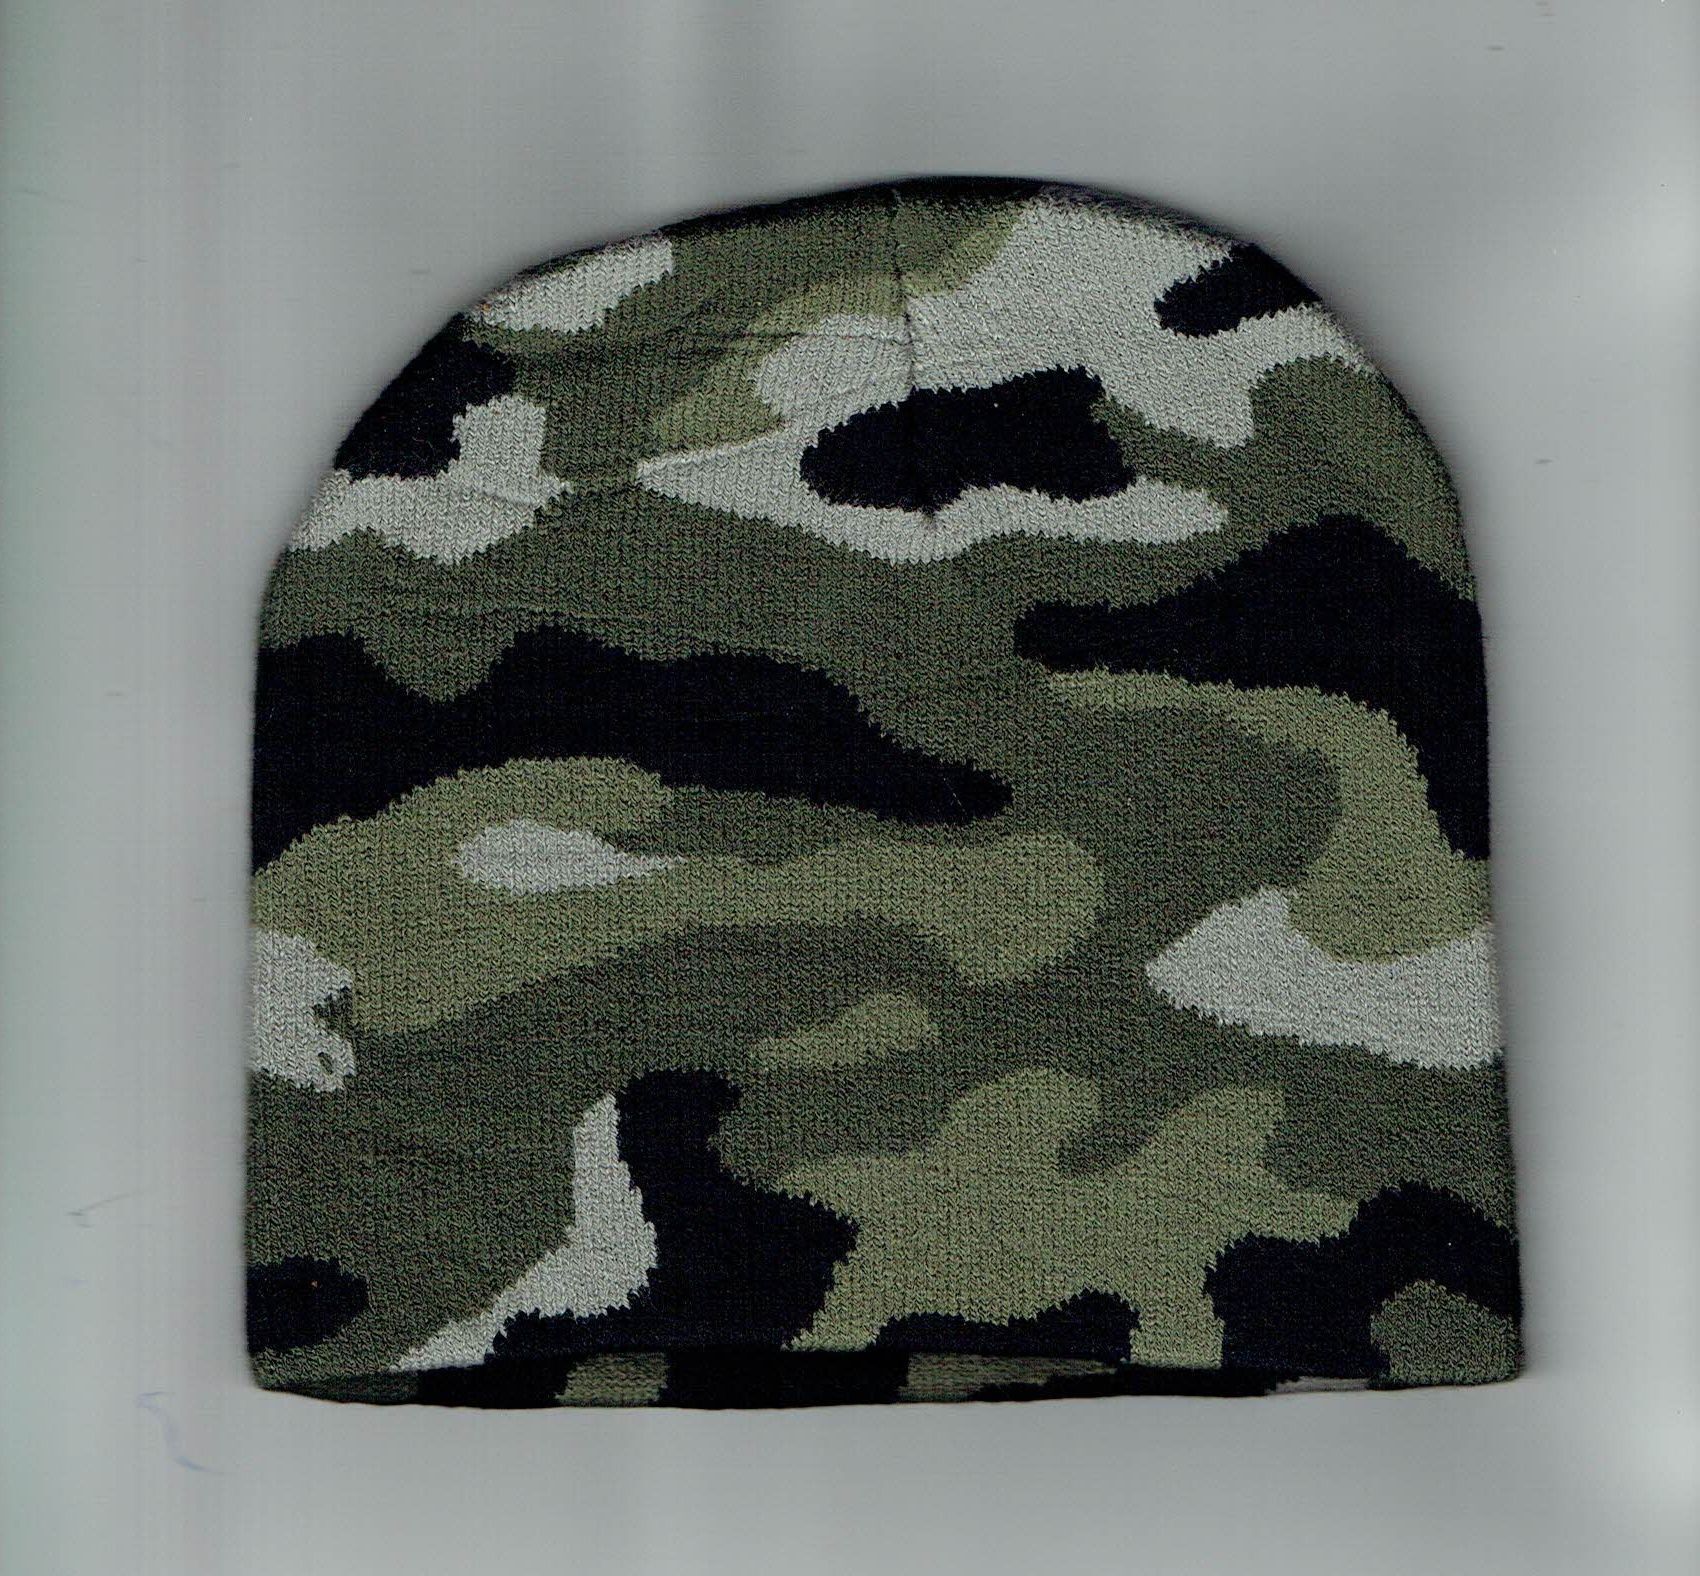 Bonnet Militaire Camouflage - Vert/Noir Mat